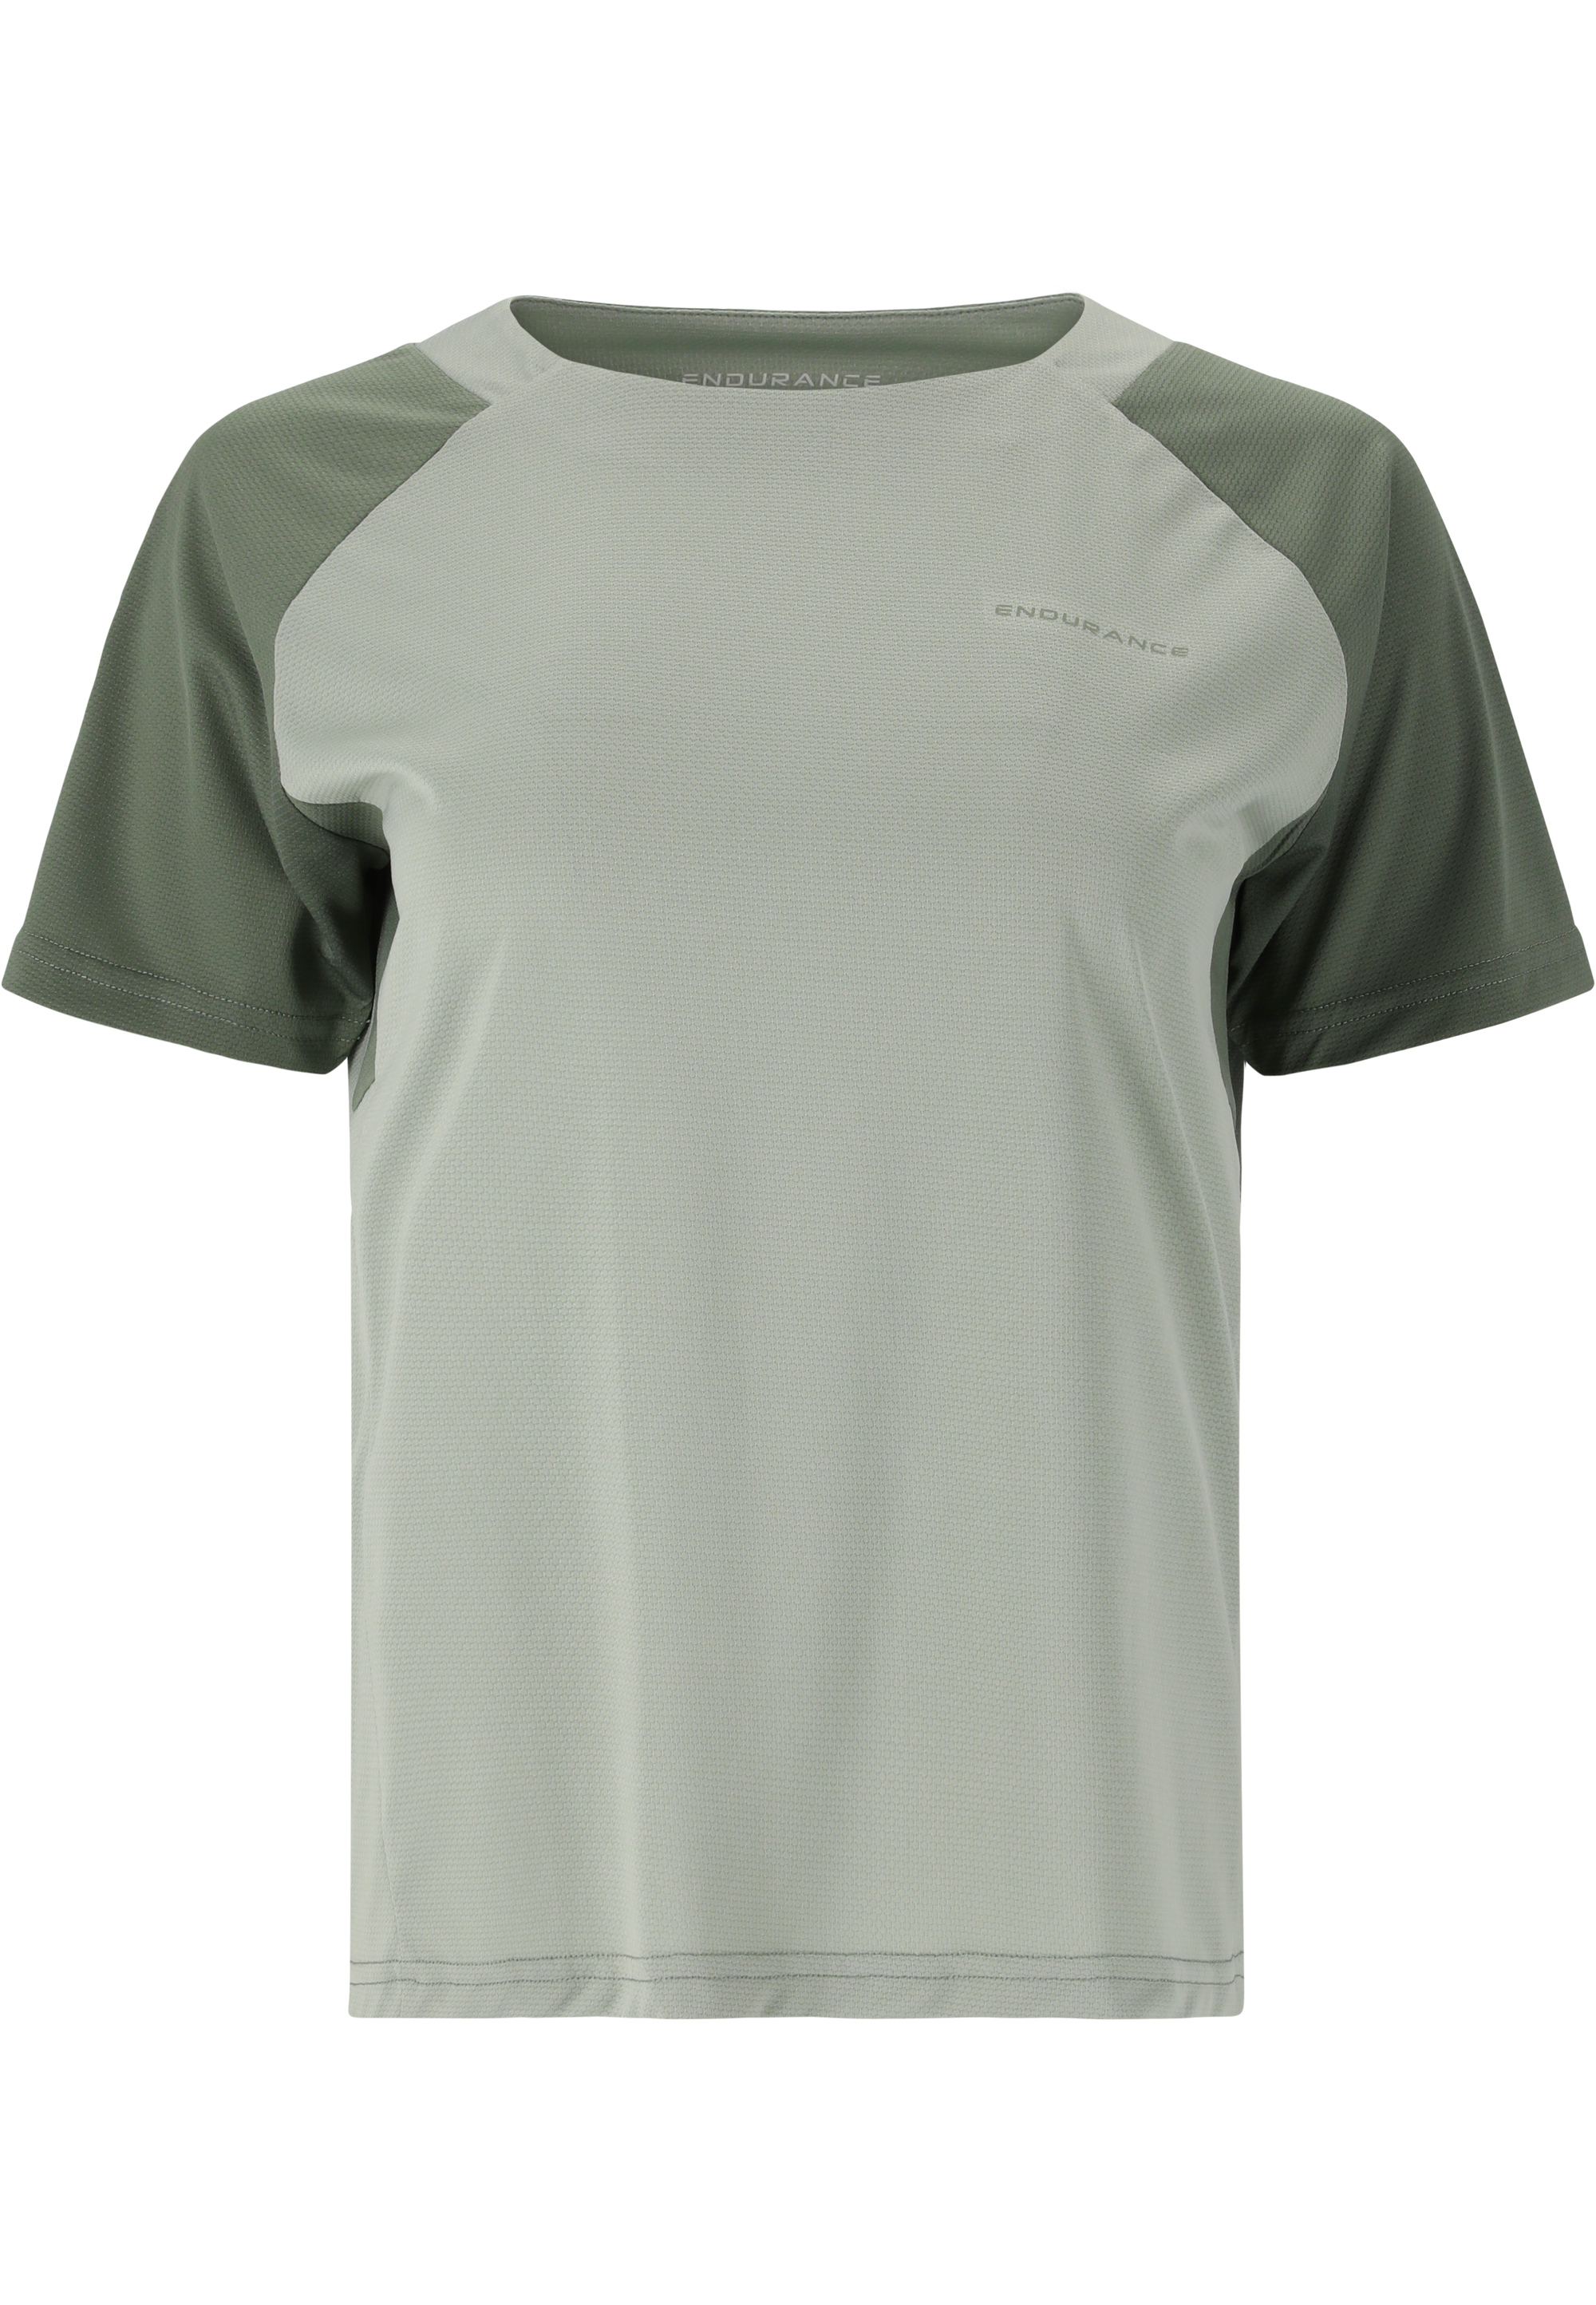 Топ Endurance T Shirt Yamy, цвет 3131 Dusty Teal цена и фото